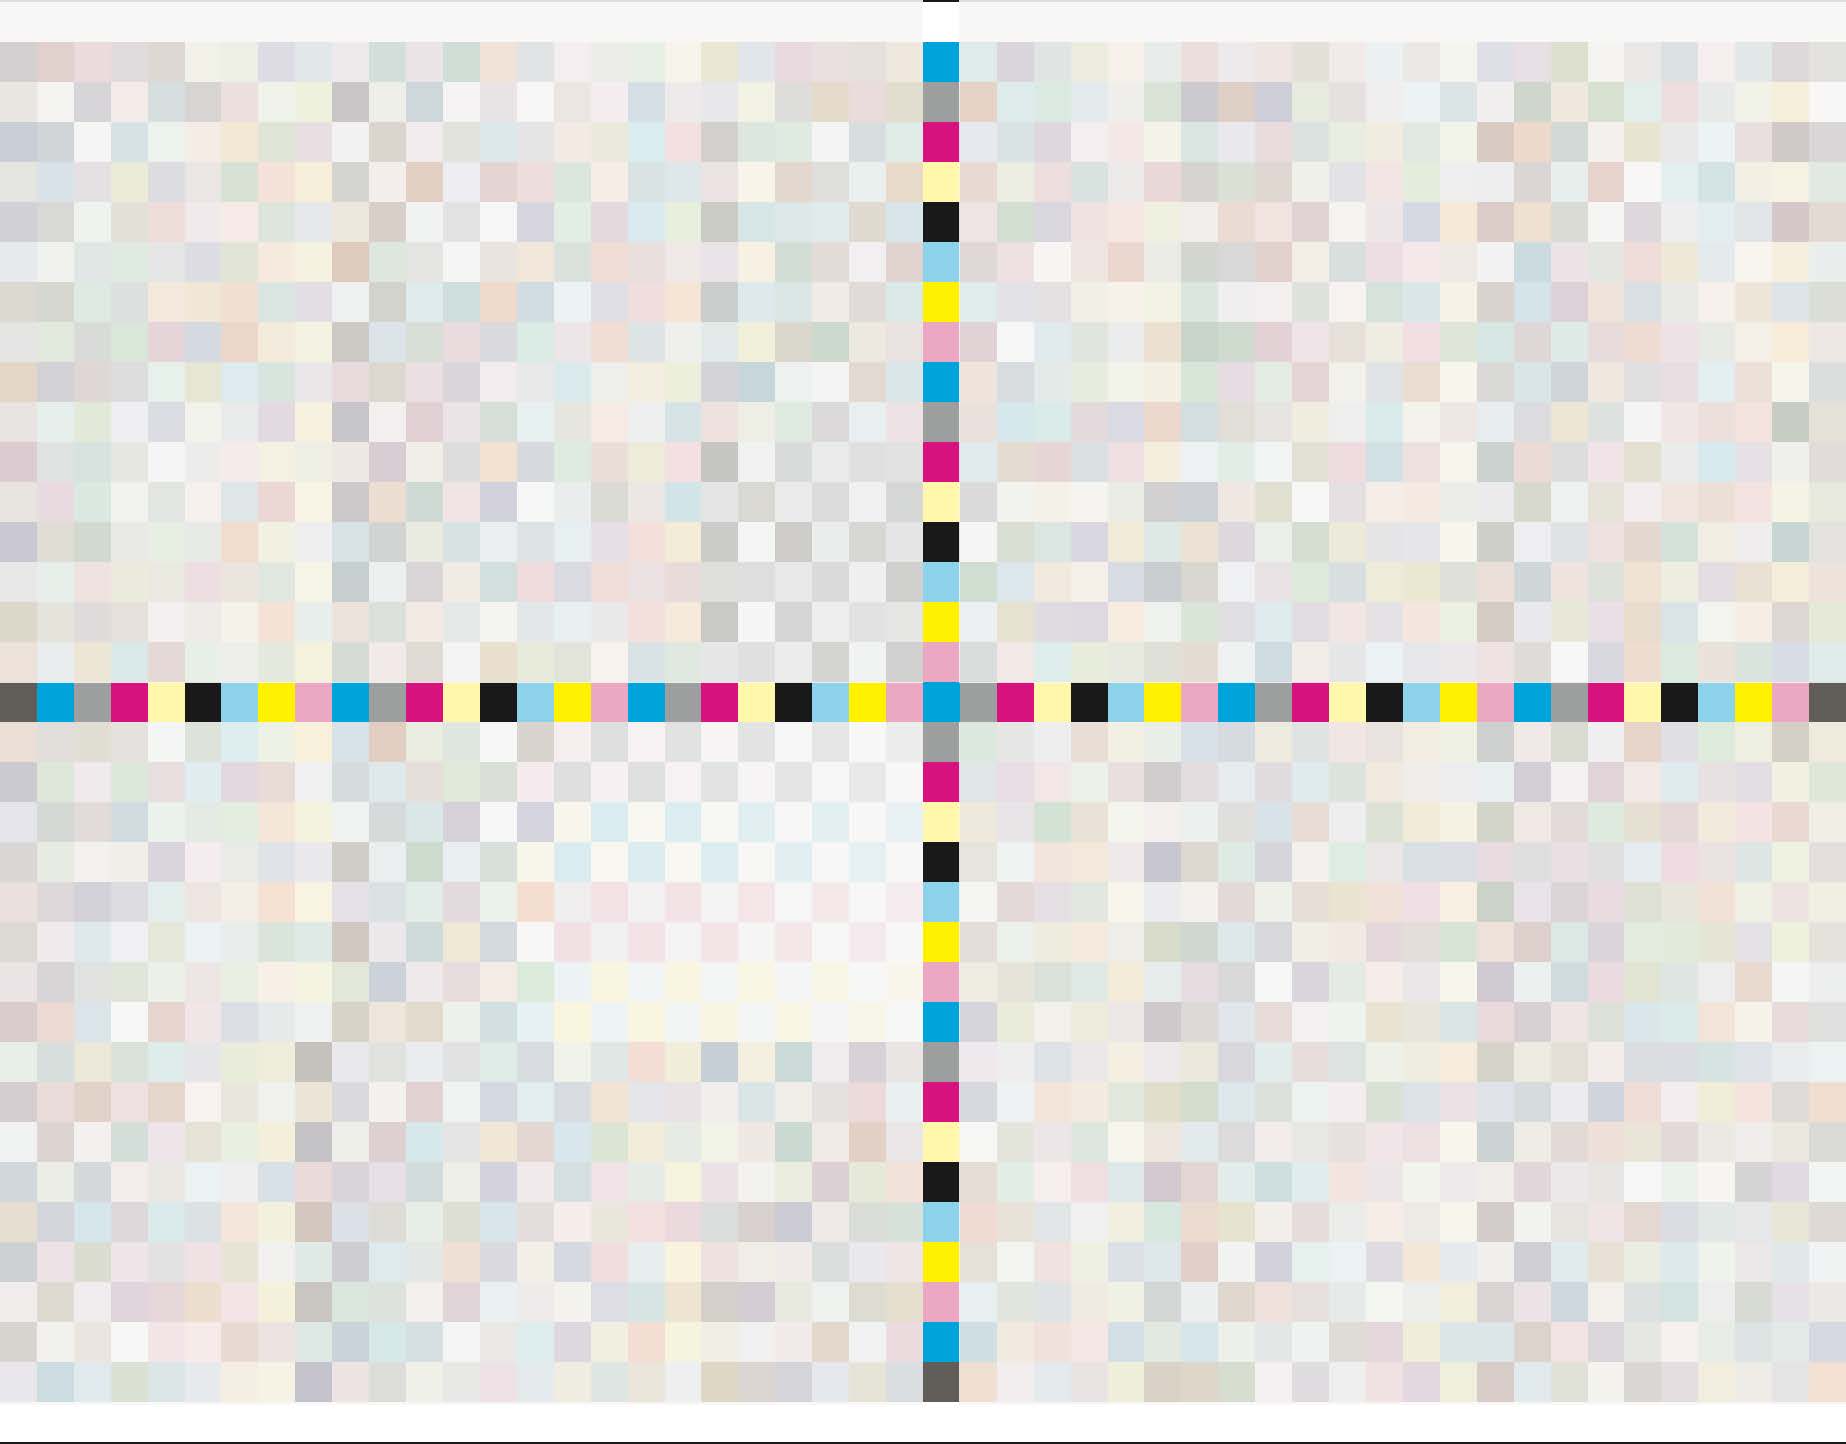 Farbwerte je nach Position des Farbfelds auf dem Chart zu berücksichtigen